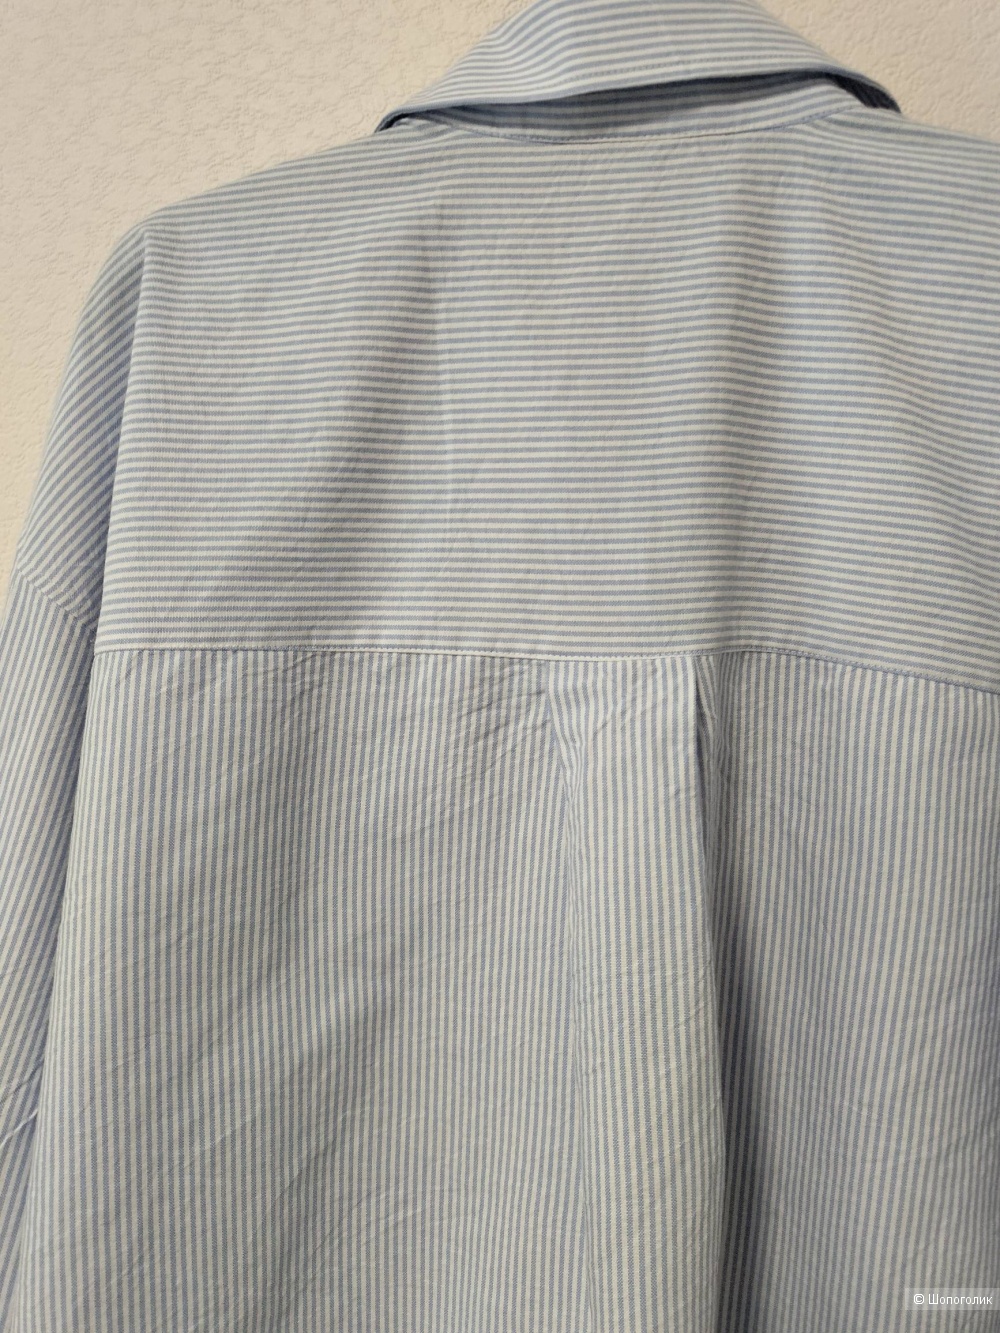 Рубашка ZARA  размер  L